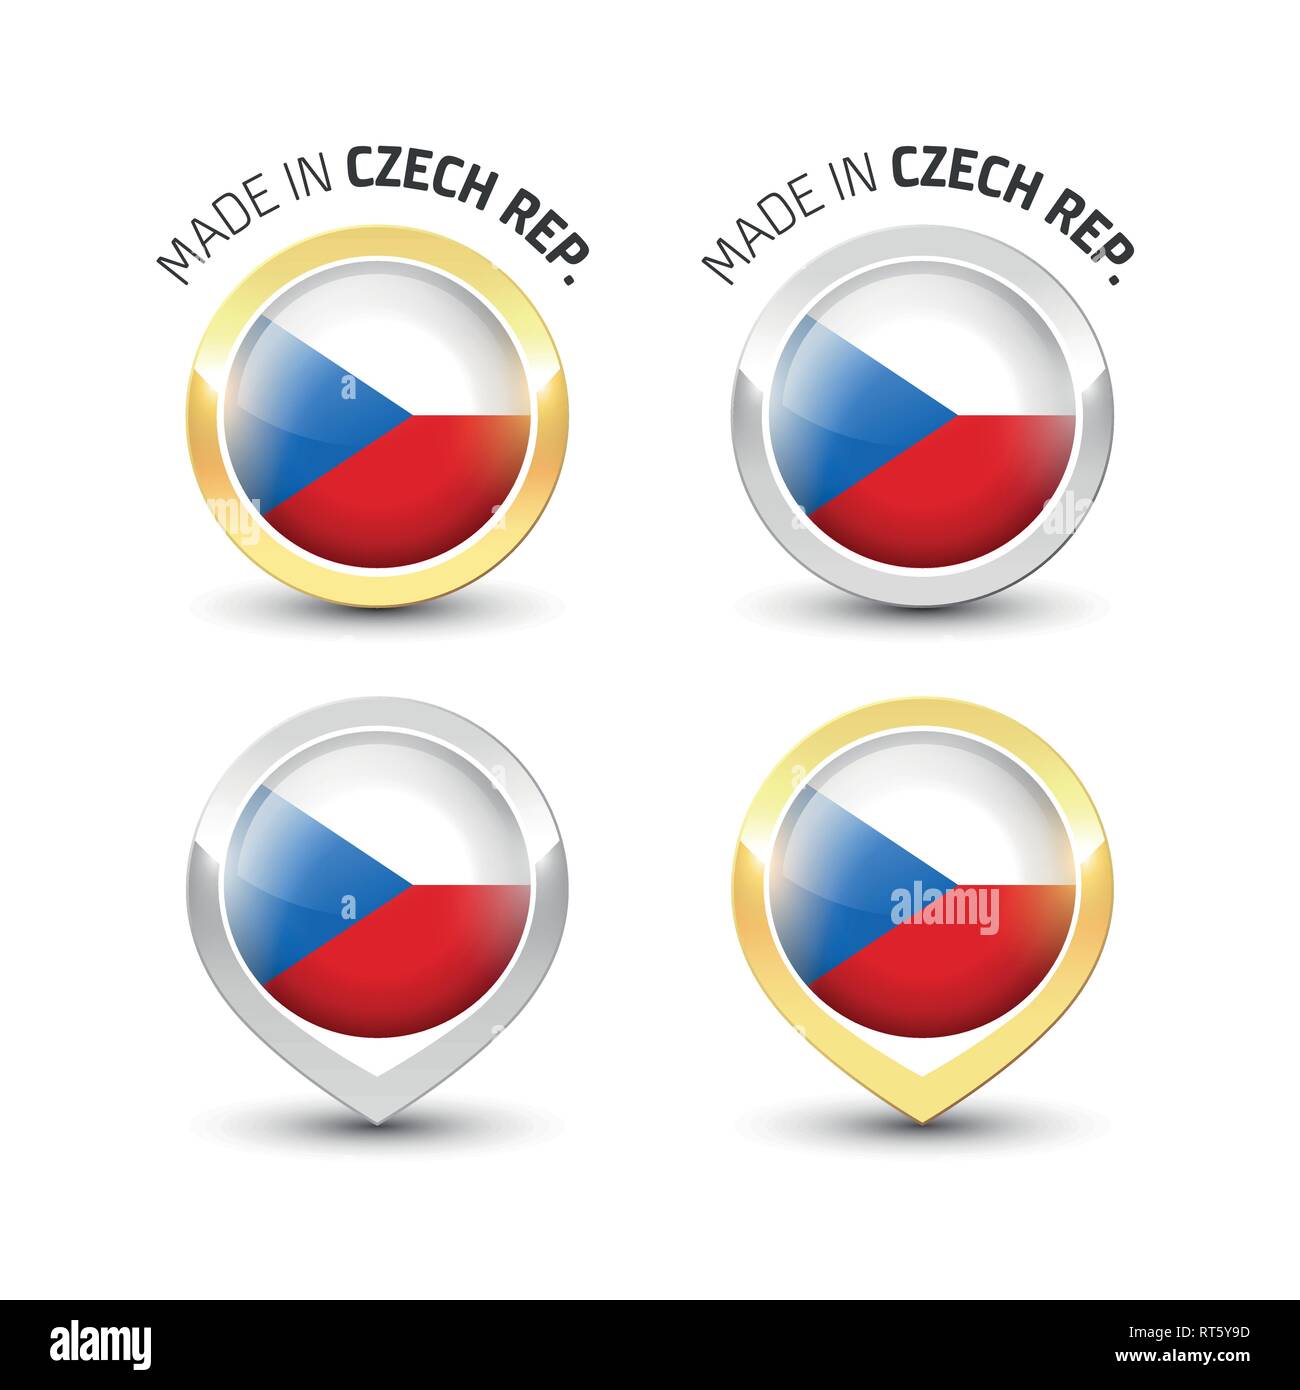 Faites en République tchèque - Garantie de l'étiquette avec la République tchèque à l'intérieur du pavillon d'or et d'argent ronde d'icônes. Illustration de Vecteur